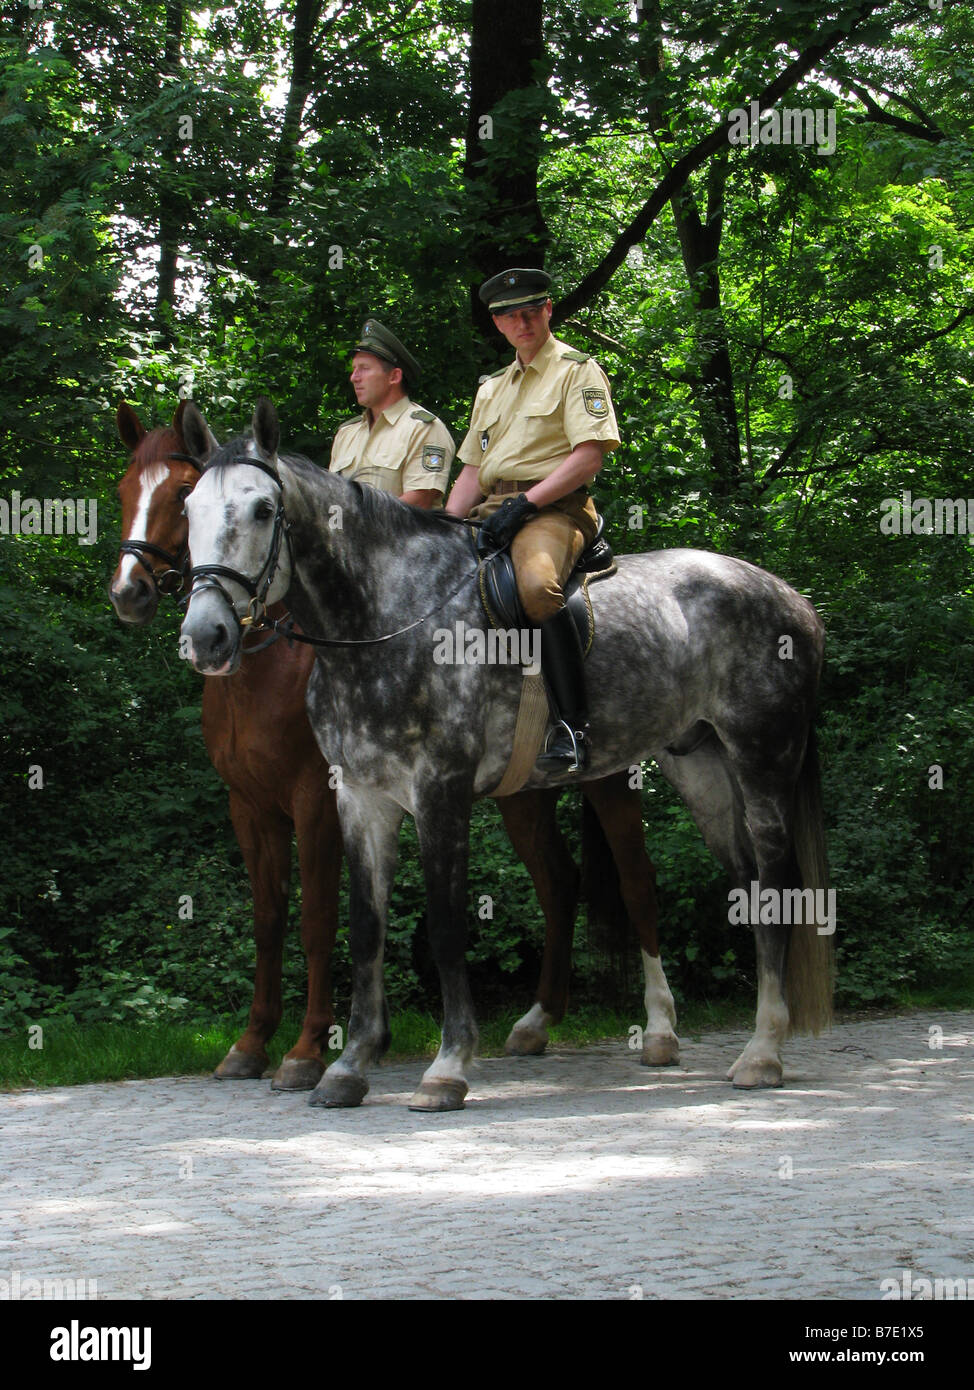 inländische Pferd (Equus Przewalskii F. Caballus), Polizisten auf dem Pferderücken in der englische Garten, Deutschland, Bayern, München Stockfoto